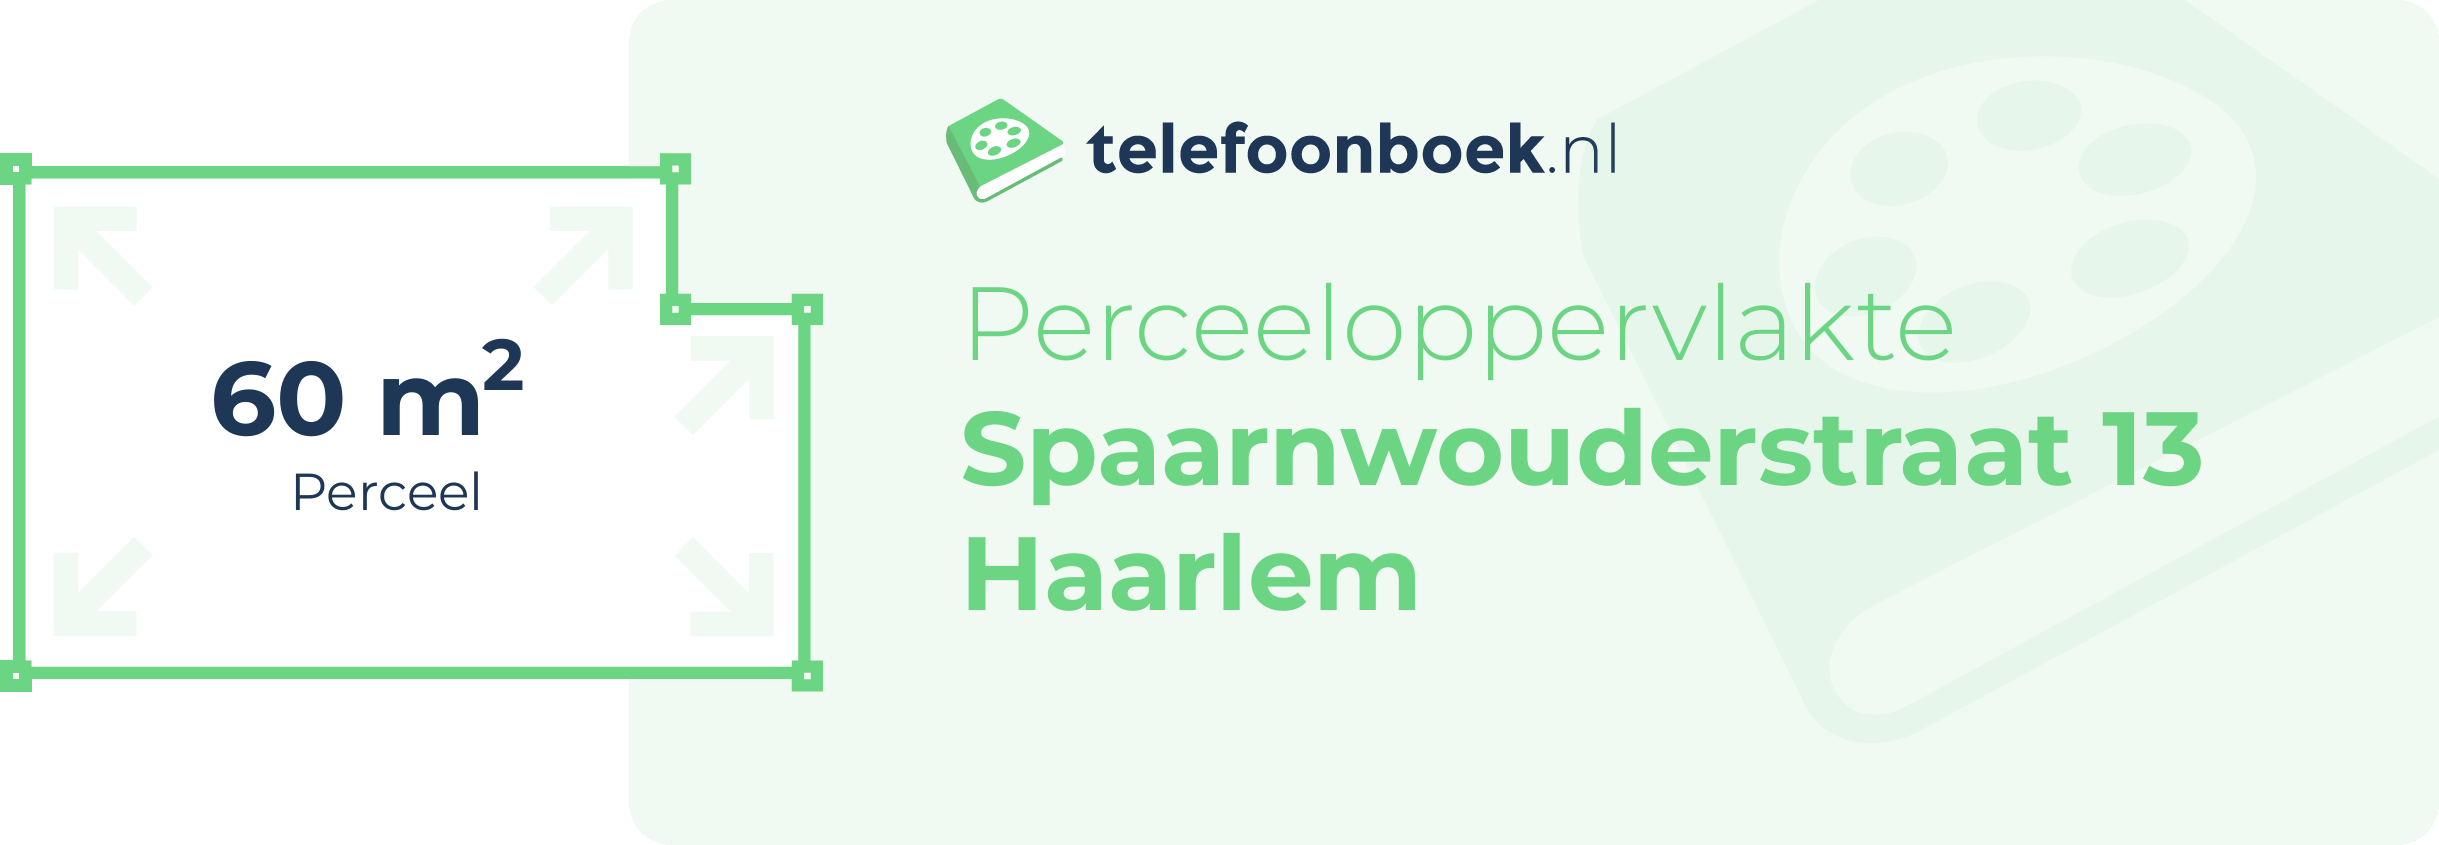 Perceeloppervlakte Spaarnwouderstraat 13 Haarlem